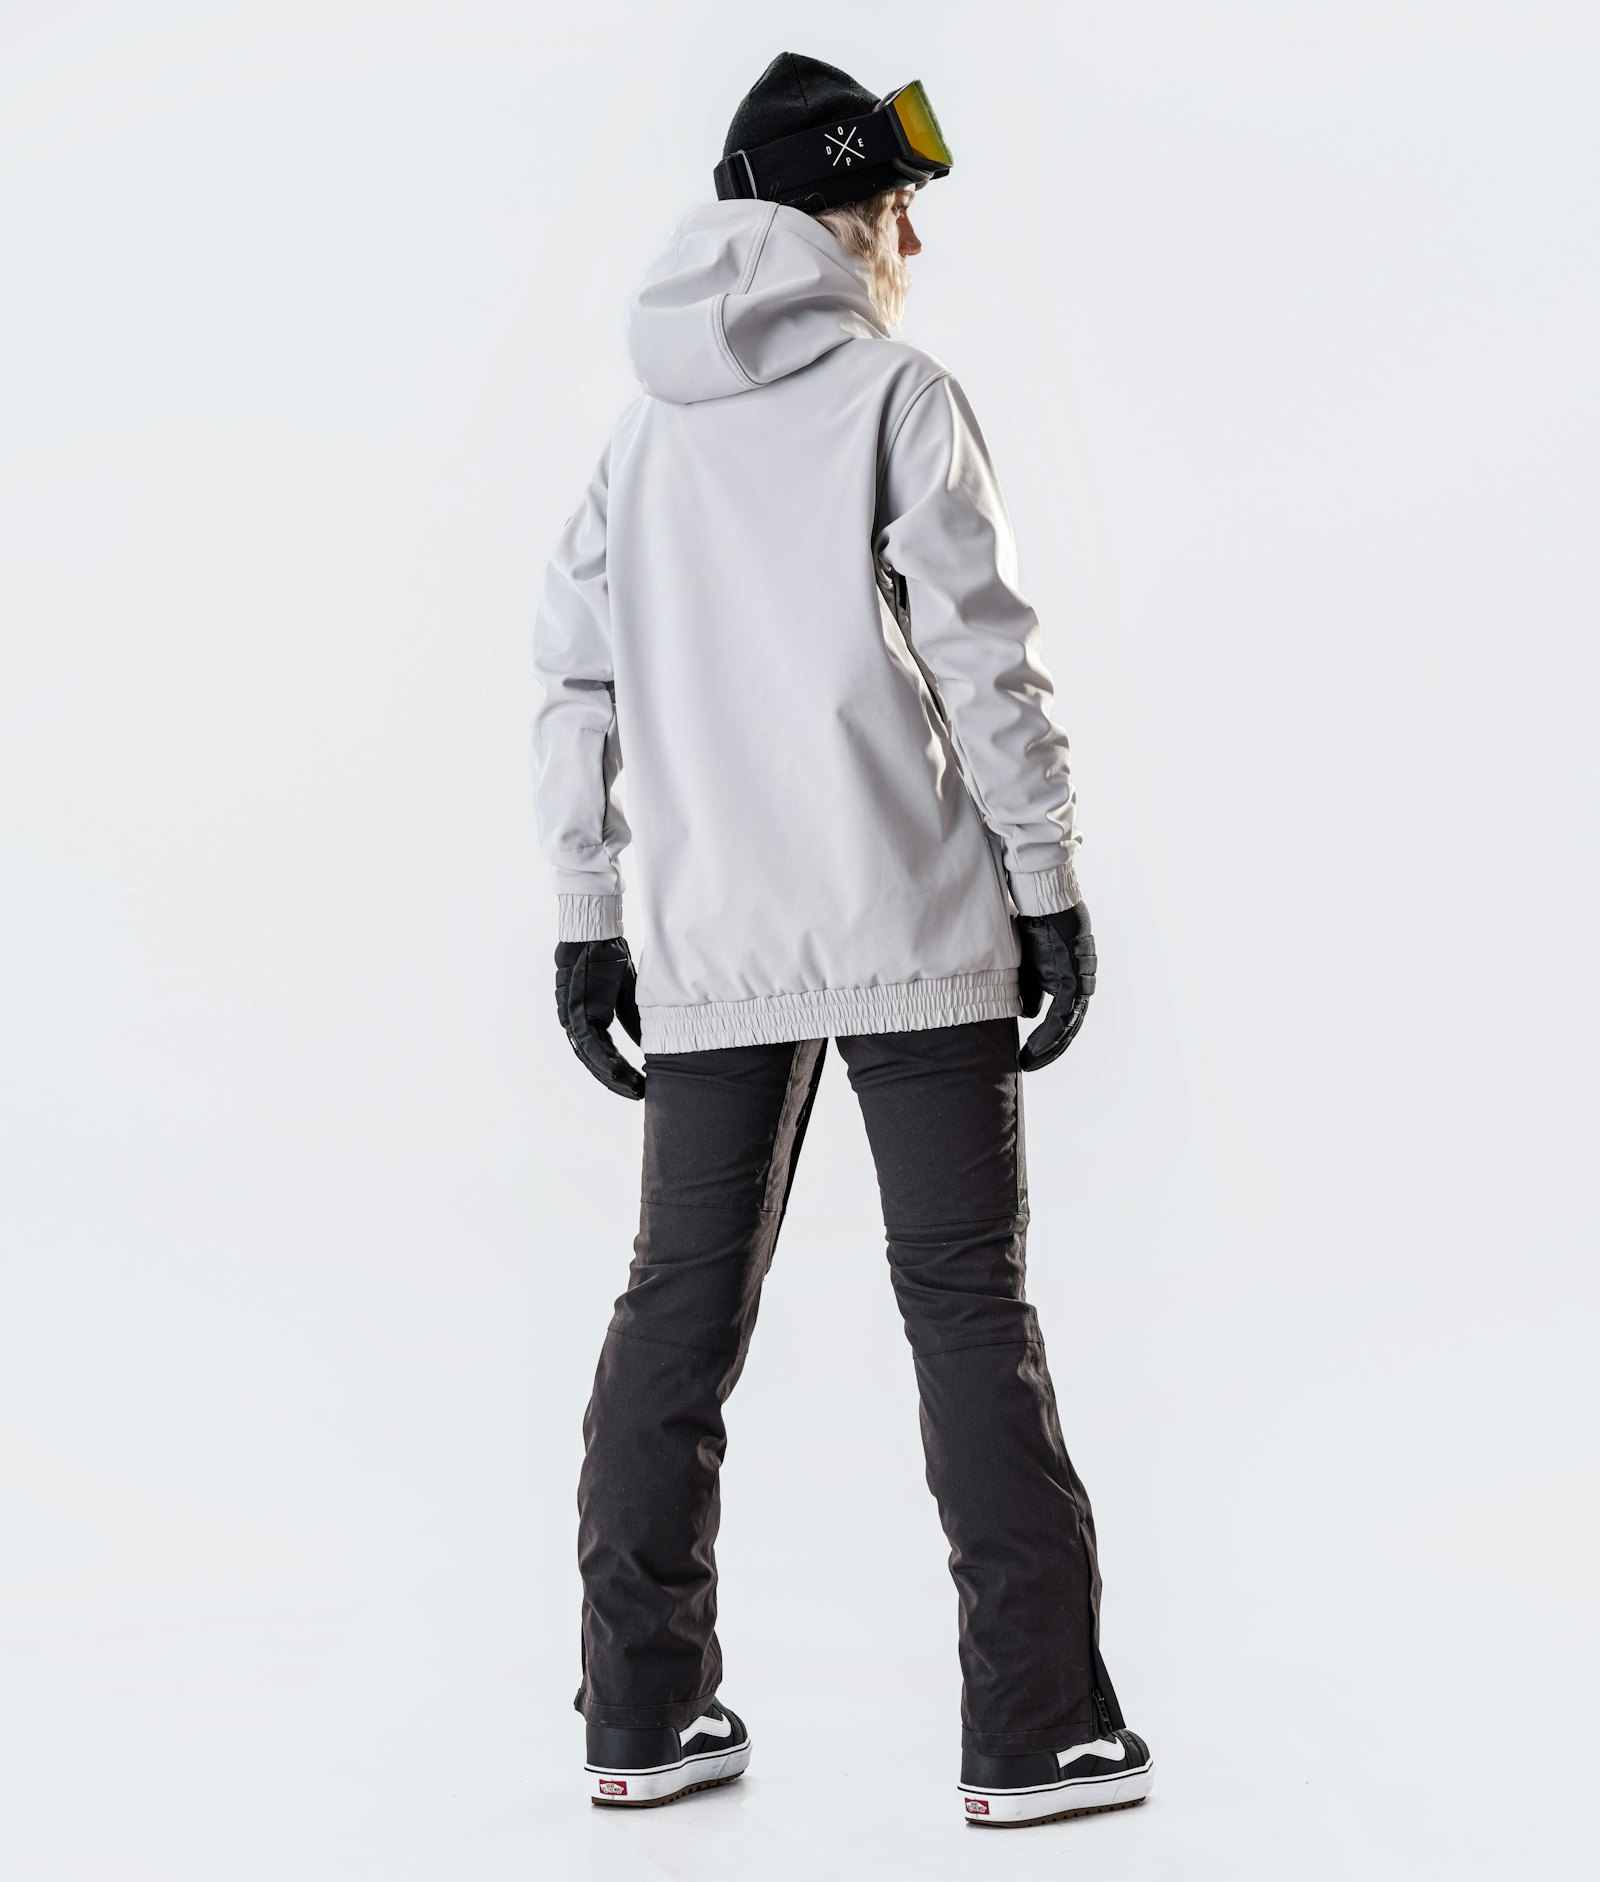 Wylie W 10k Snowboard Jacket Women Capital Light Grey